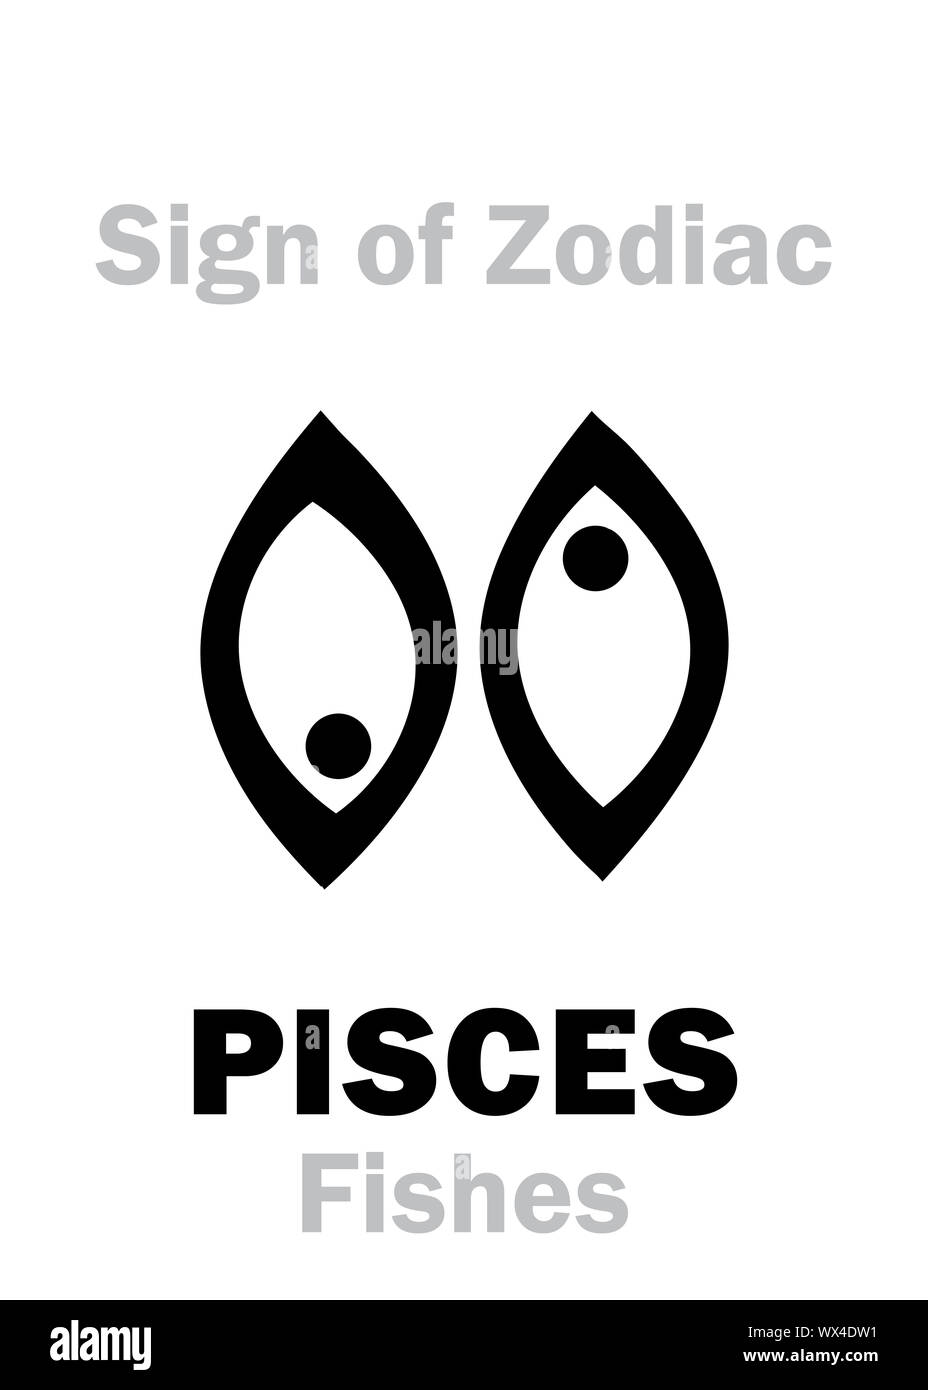 Astrologia: segno zodiacale pesci (Pesci) Foto Stock